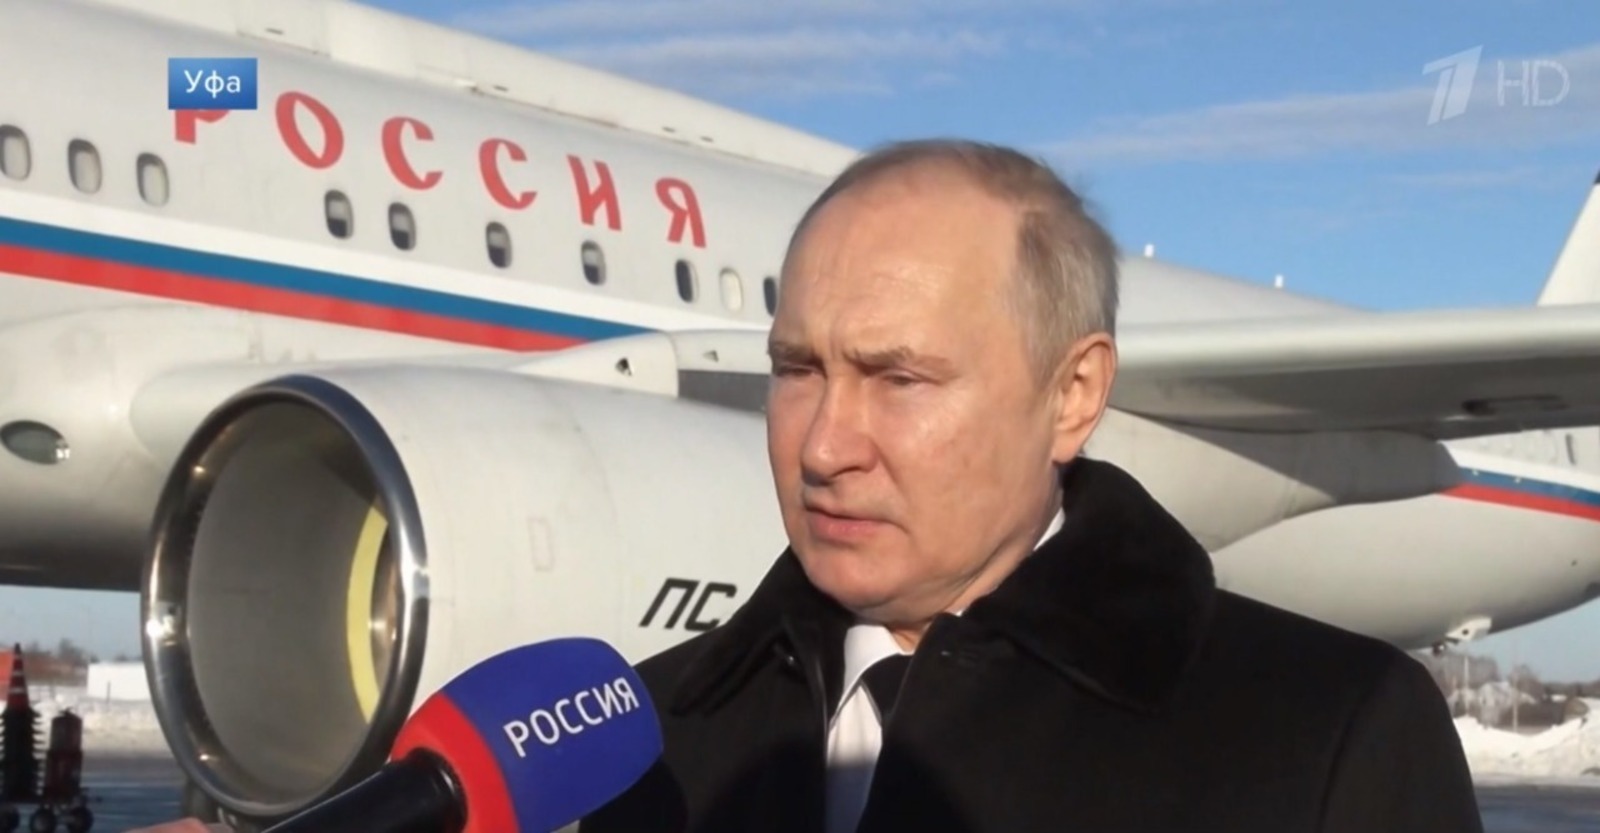 Политологи оценили визит Владимир Путина в Уфу